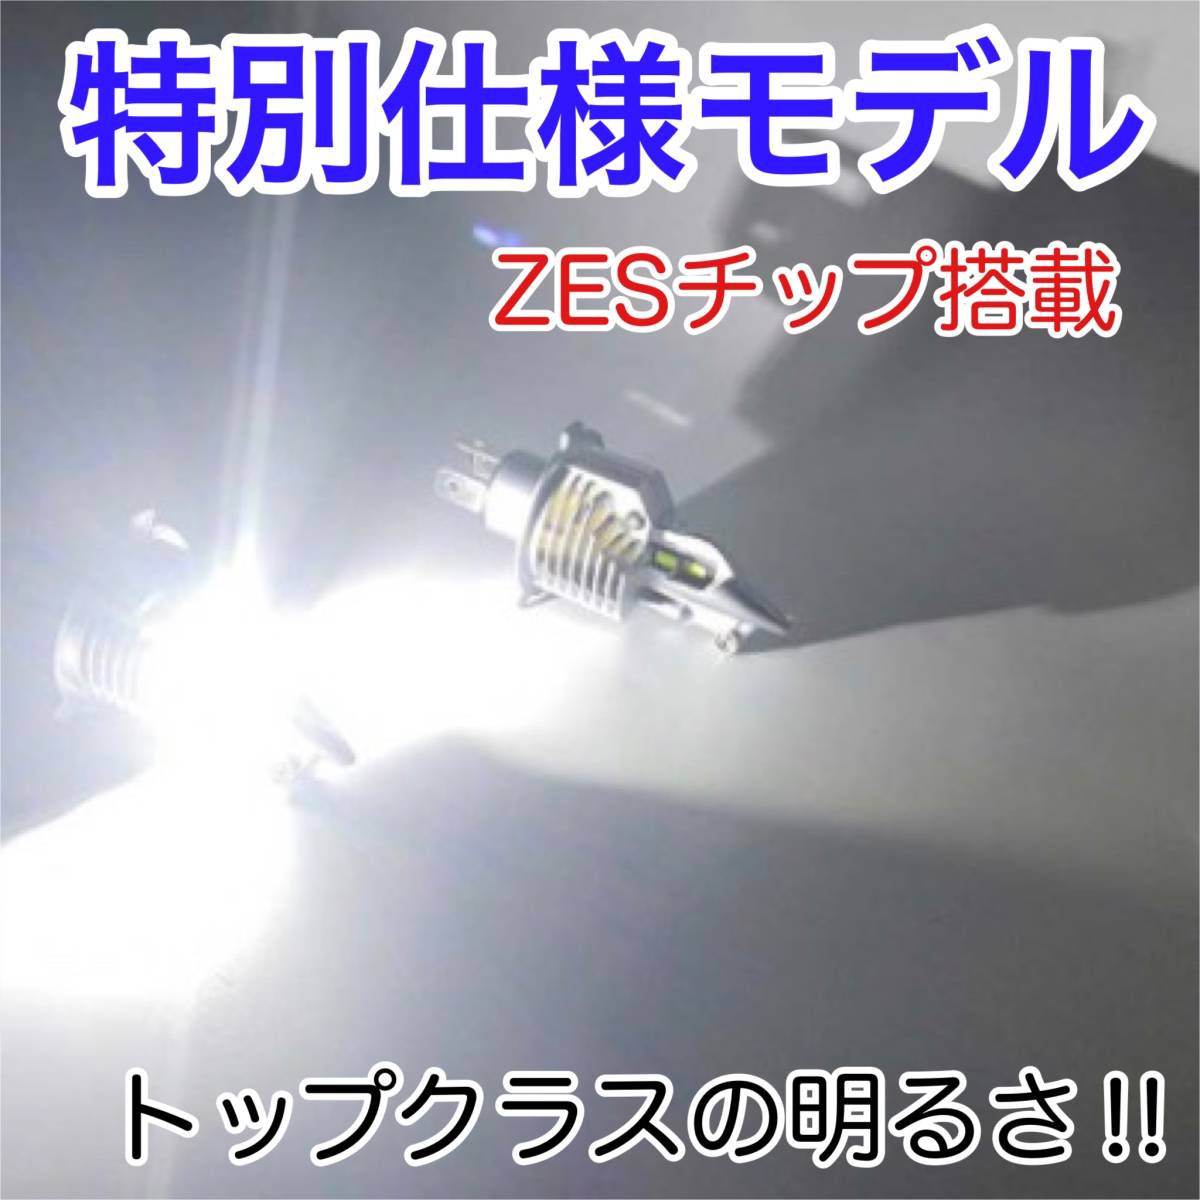 SUZUKI スズキ Bandit1200 GV79A LEDヘッドライト Hi/Lo H4 バルブ 1灯 LEDテールランプ 1個 ホワイト 交換用